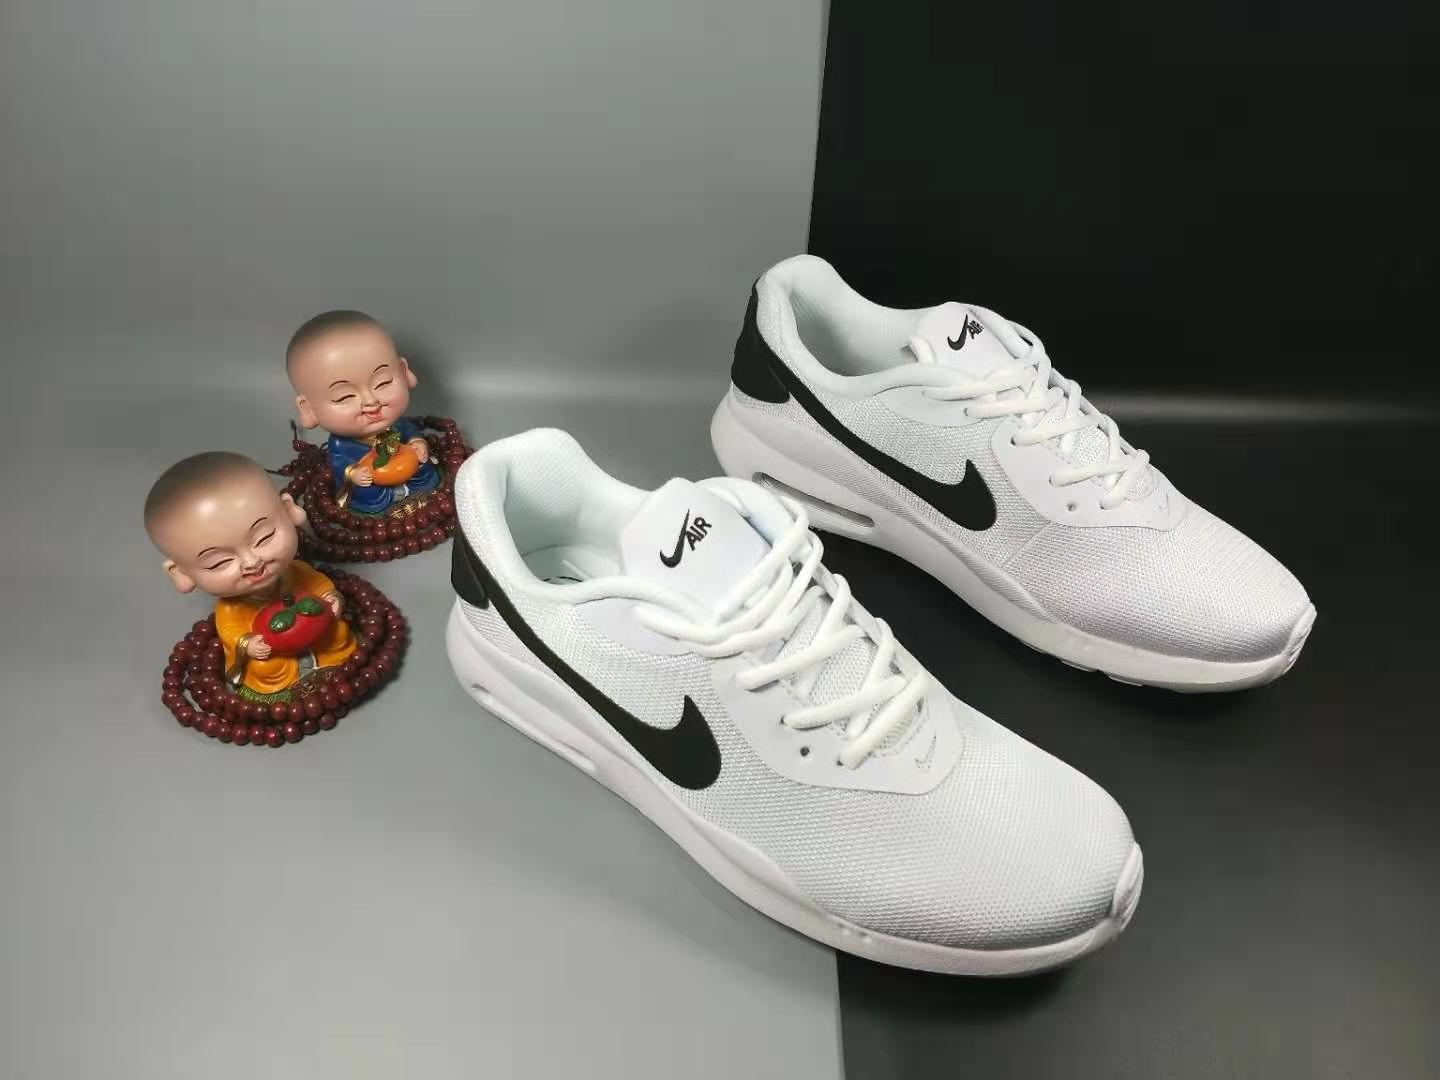 2020 Nike Air Max OKETO WNTR White Black Shoes For Women